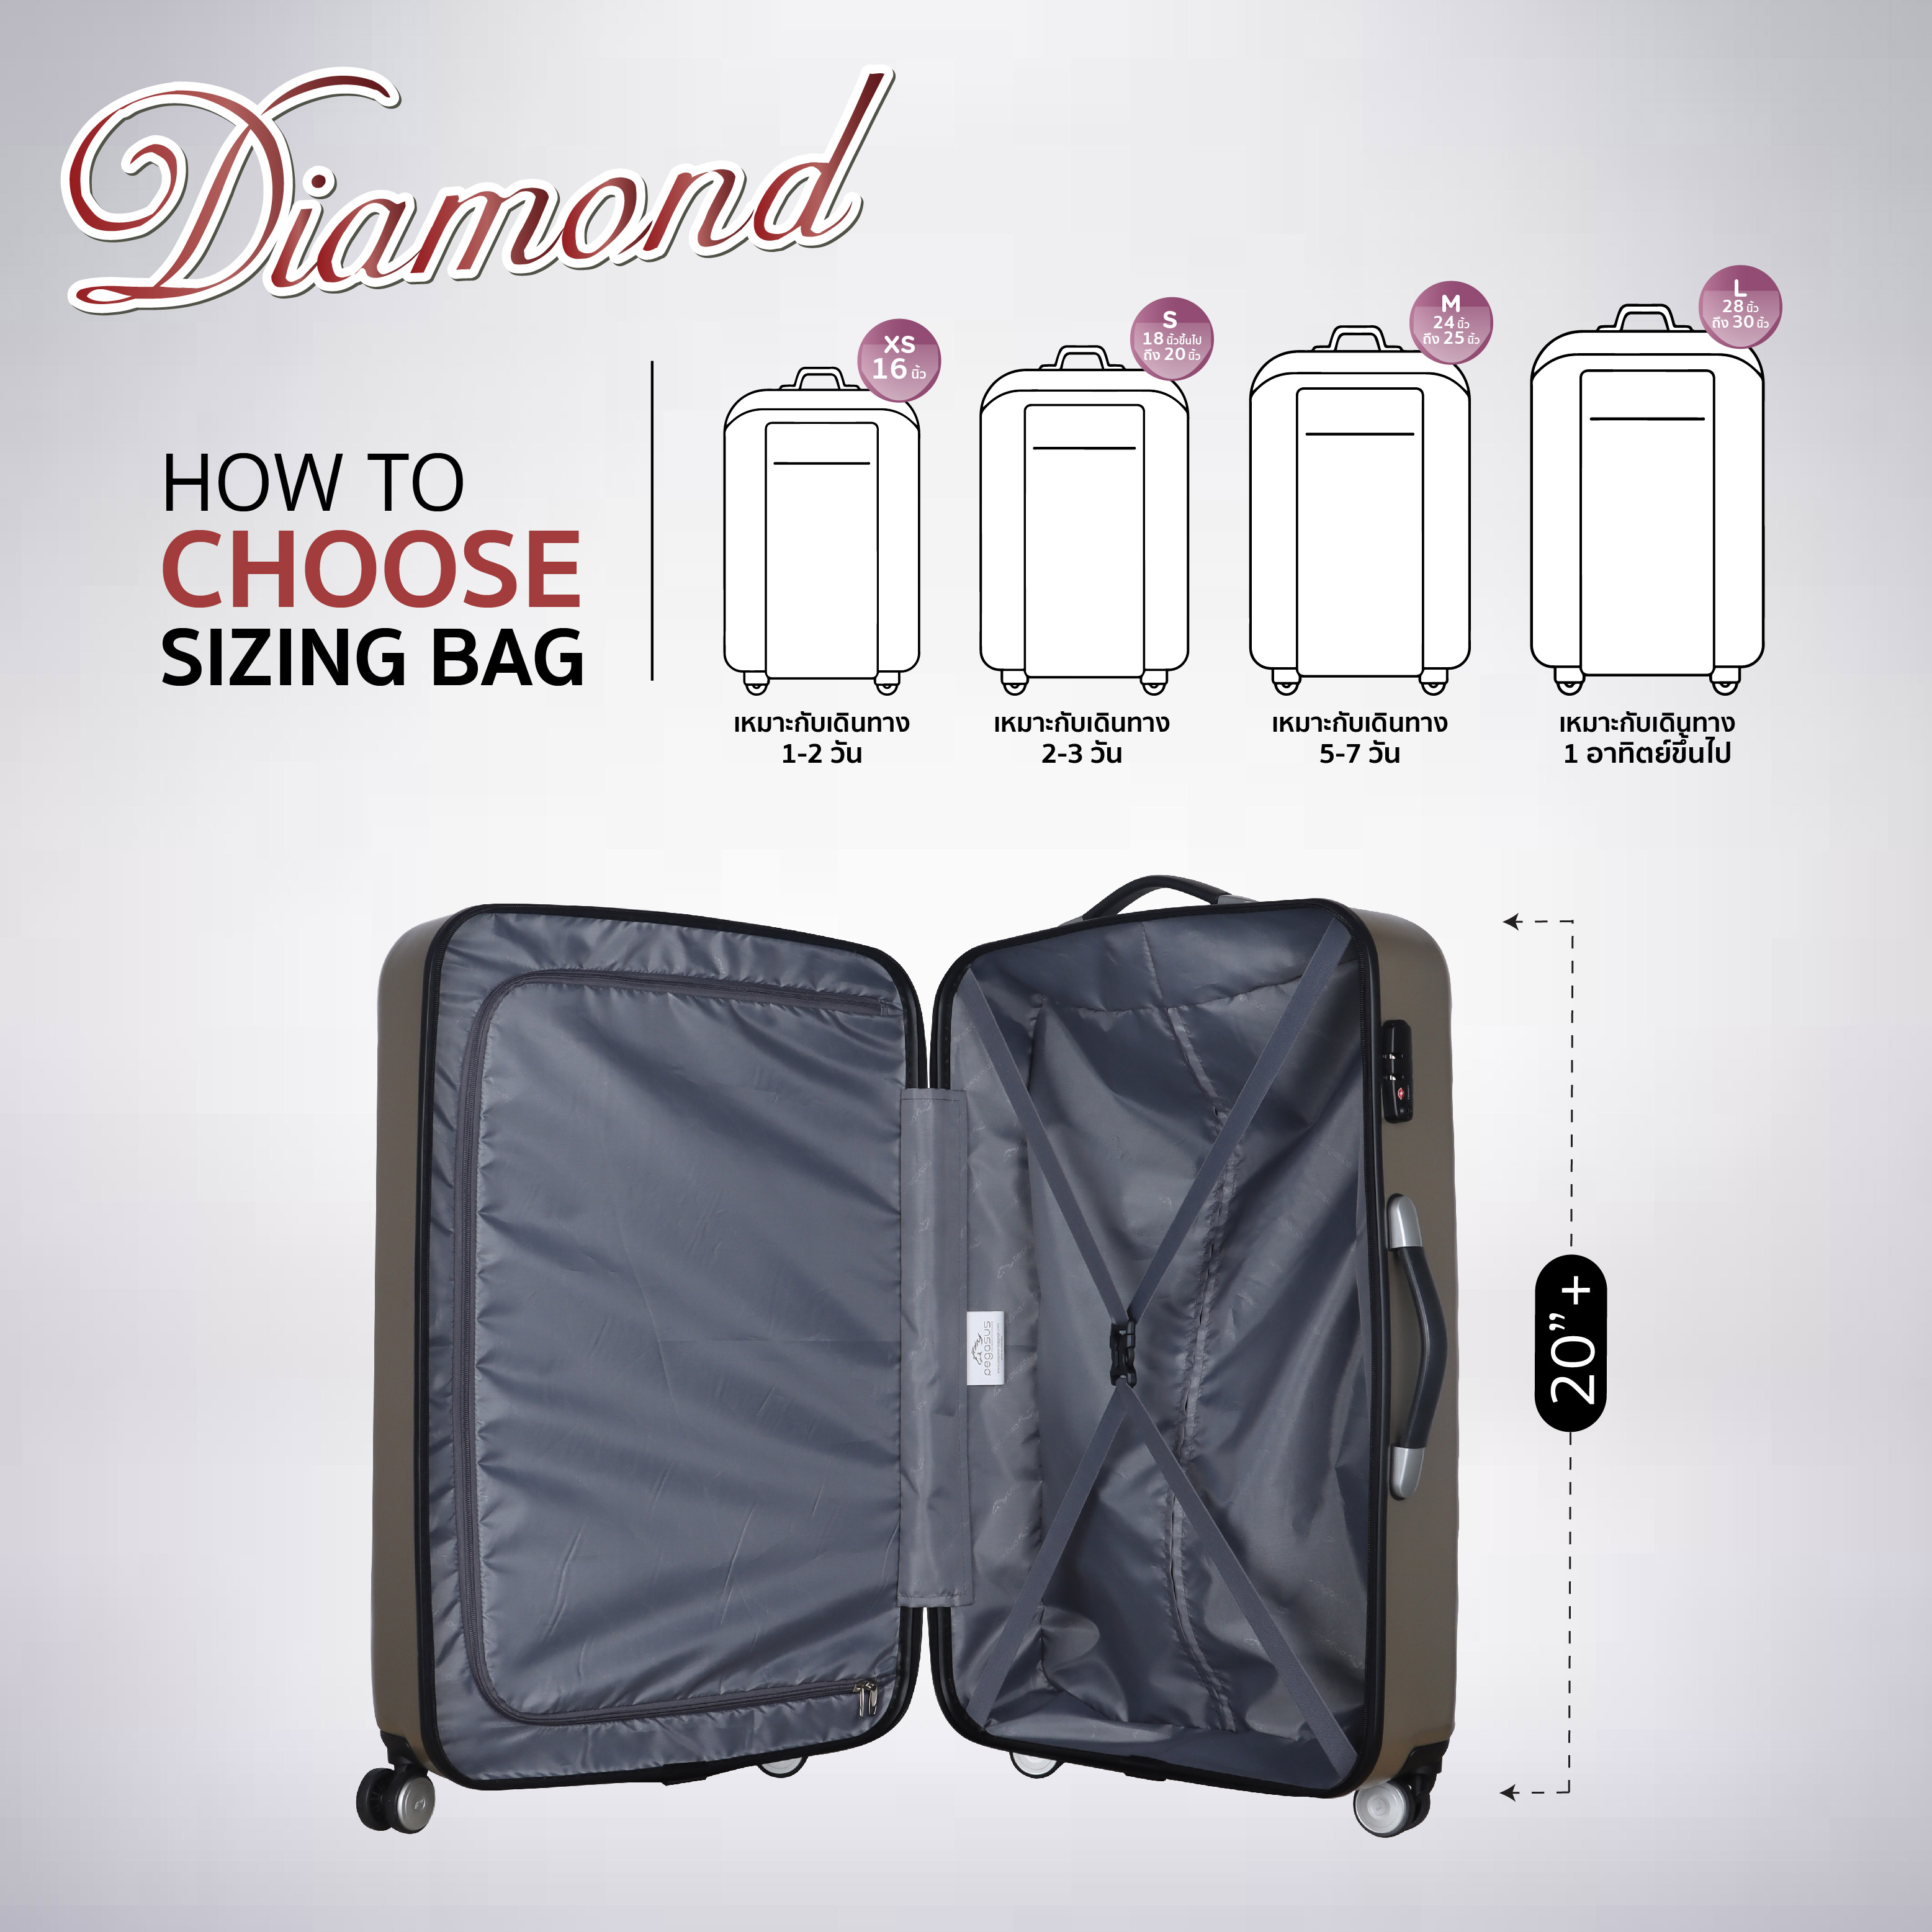 กระเป๋าเดินทาง 20 นิ้ว รุ่น Diamond สีทอง รุ่นใหม่ล่าสุด